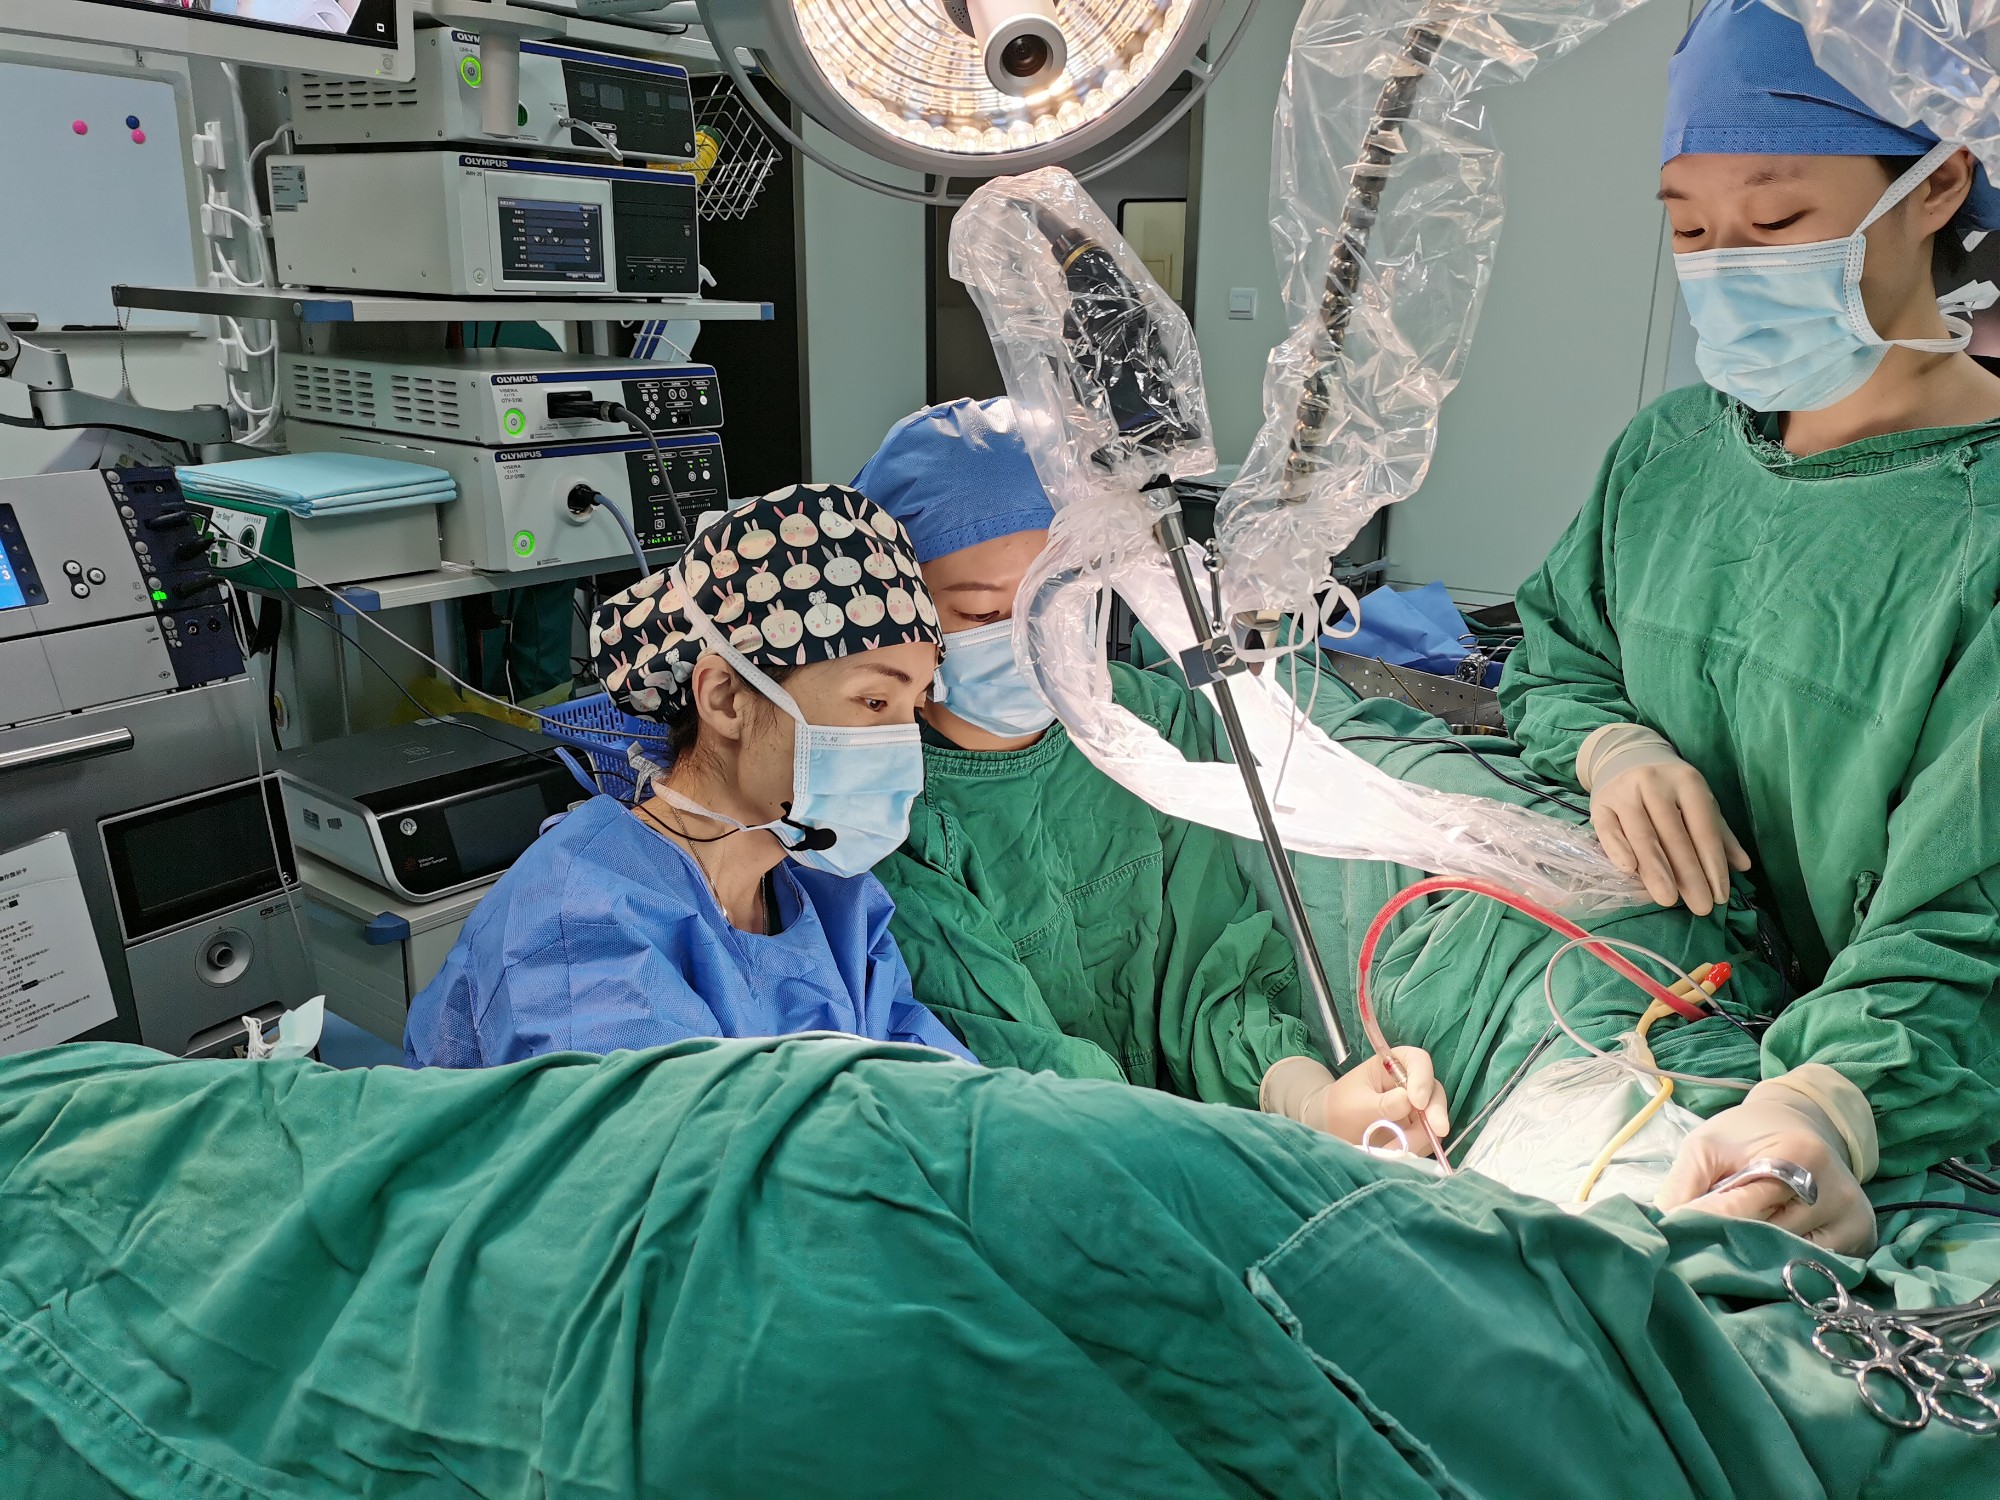 妇科手术直播周在我院双院区手术室成功举办
